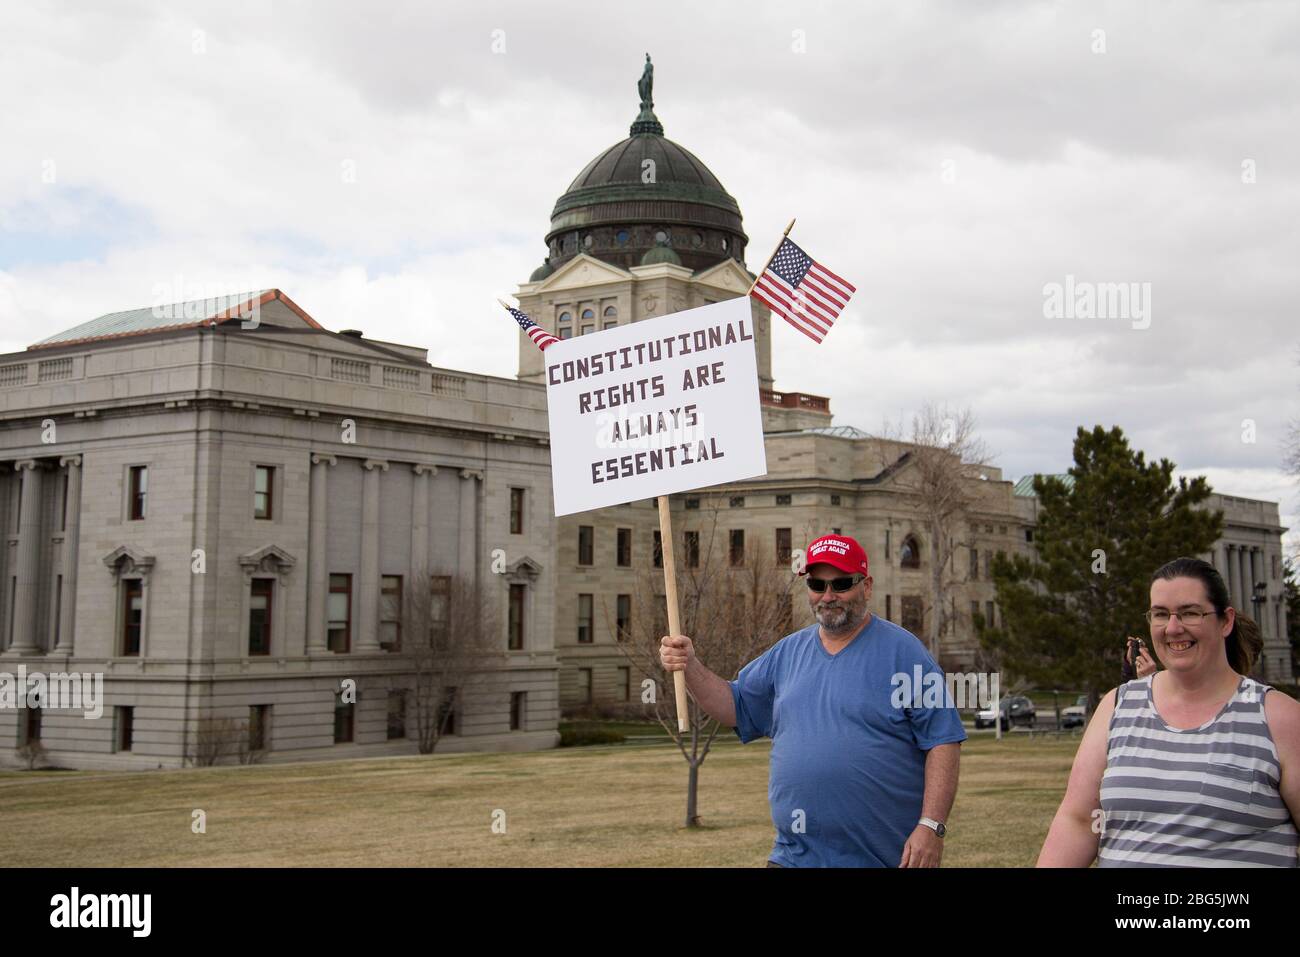 Helena, Montana - 19. April 2020: Mann, der protestiert trägt Make America Great Again der Besitz von Verfassungsrechten ist ein wesentliches Zeichen bei einer Protest ag Stockfoto